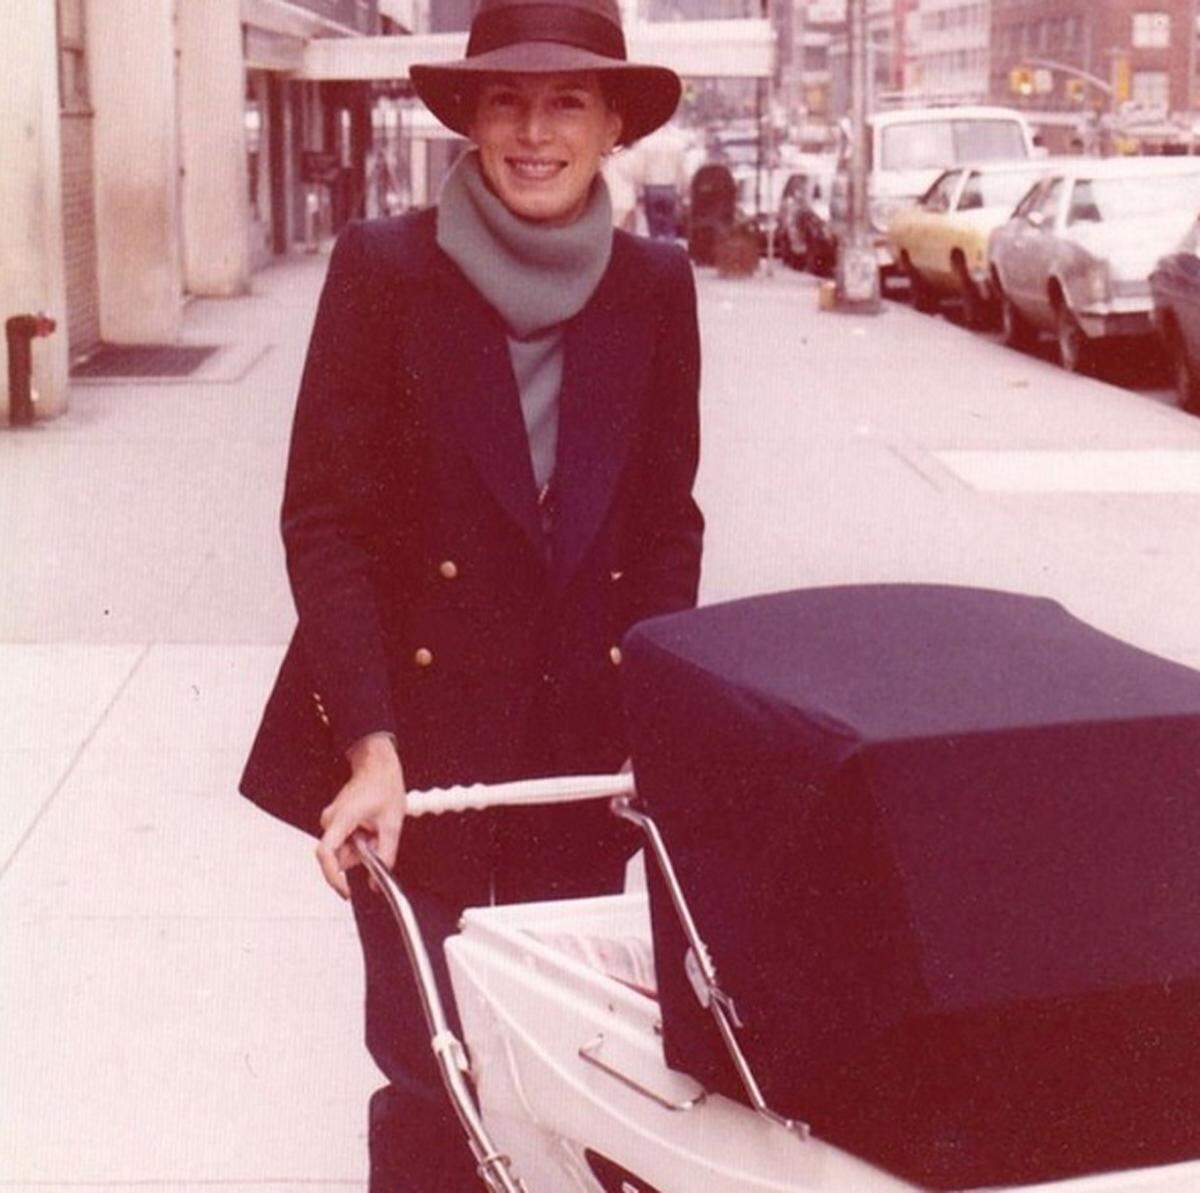 Ebenfalls nostalgisch wurde Drew Barrymoore, die ein Foto ihrer Mutter mit Kinderwagen veröffentlichte.